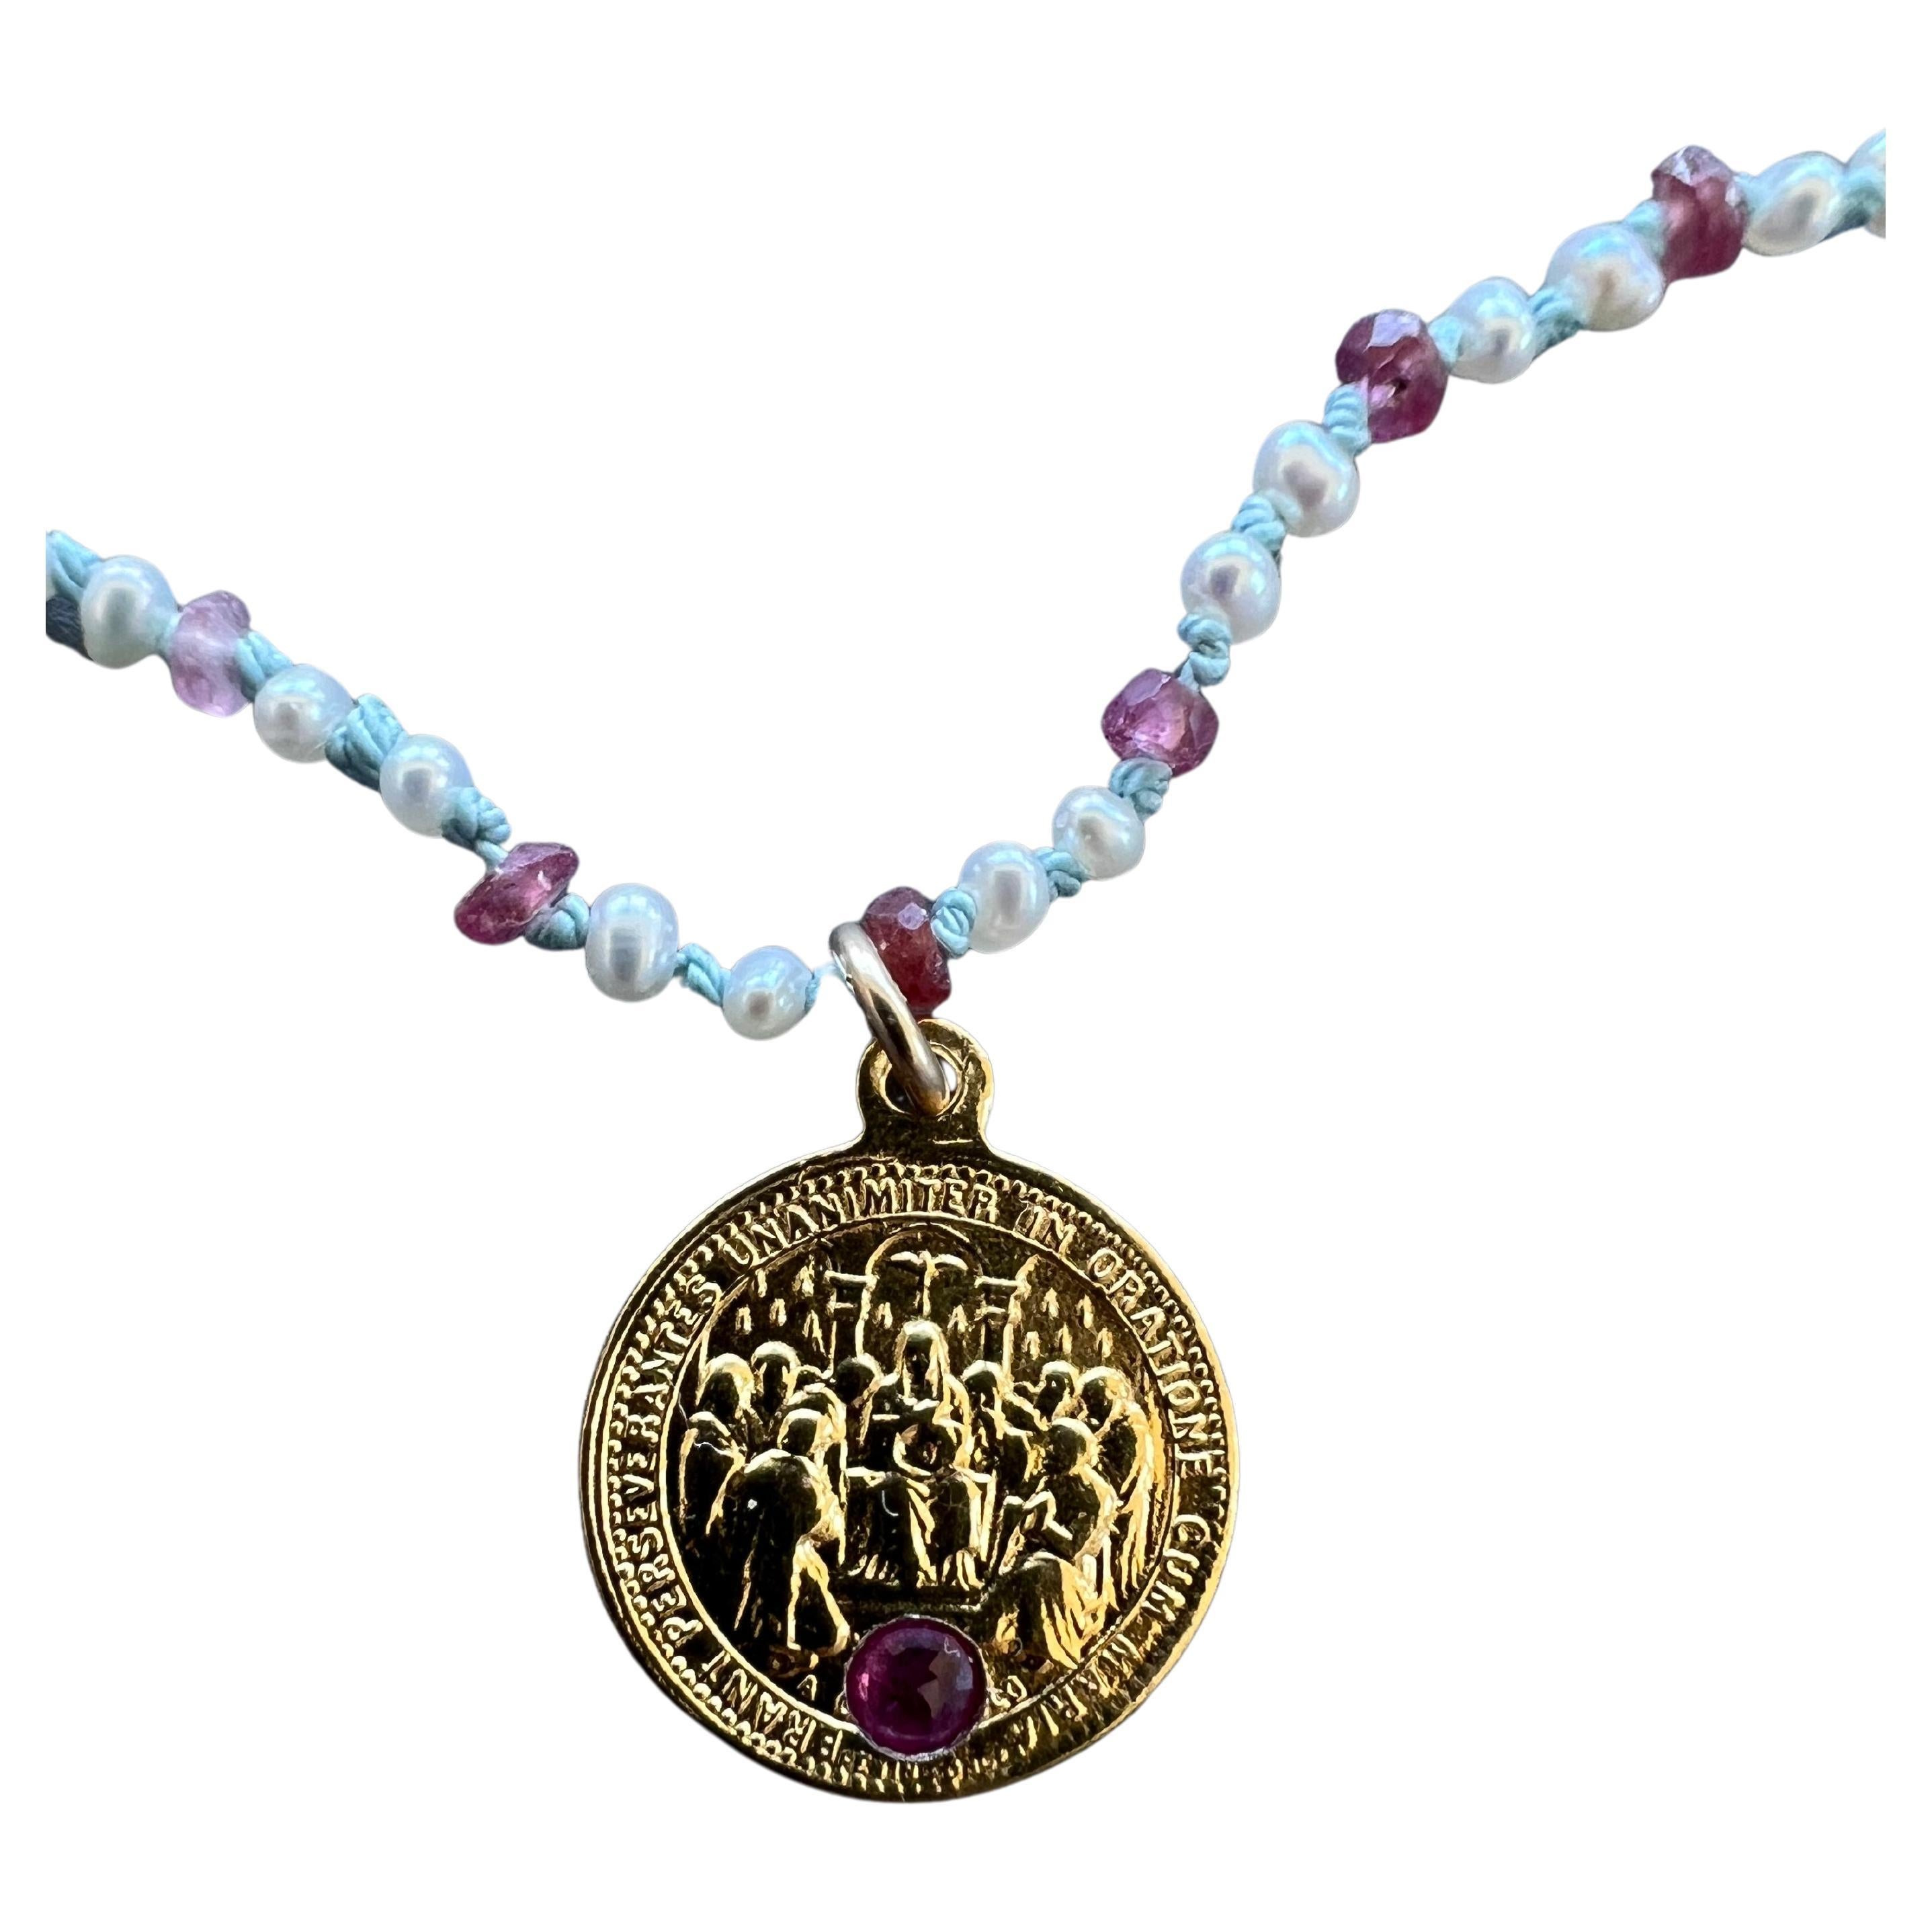 Tourmaline rose sertie dans une médaille du Sacré-Cœur en plaqué or avec un Whiting composé de perles blanches, d'opales et de rubis perlés avec des nœuds de soie bleu clair entre les deux. Il s'agit d'une pièce unique.
Collier ras-de-cou 16